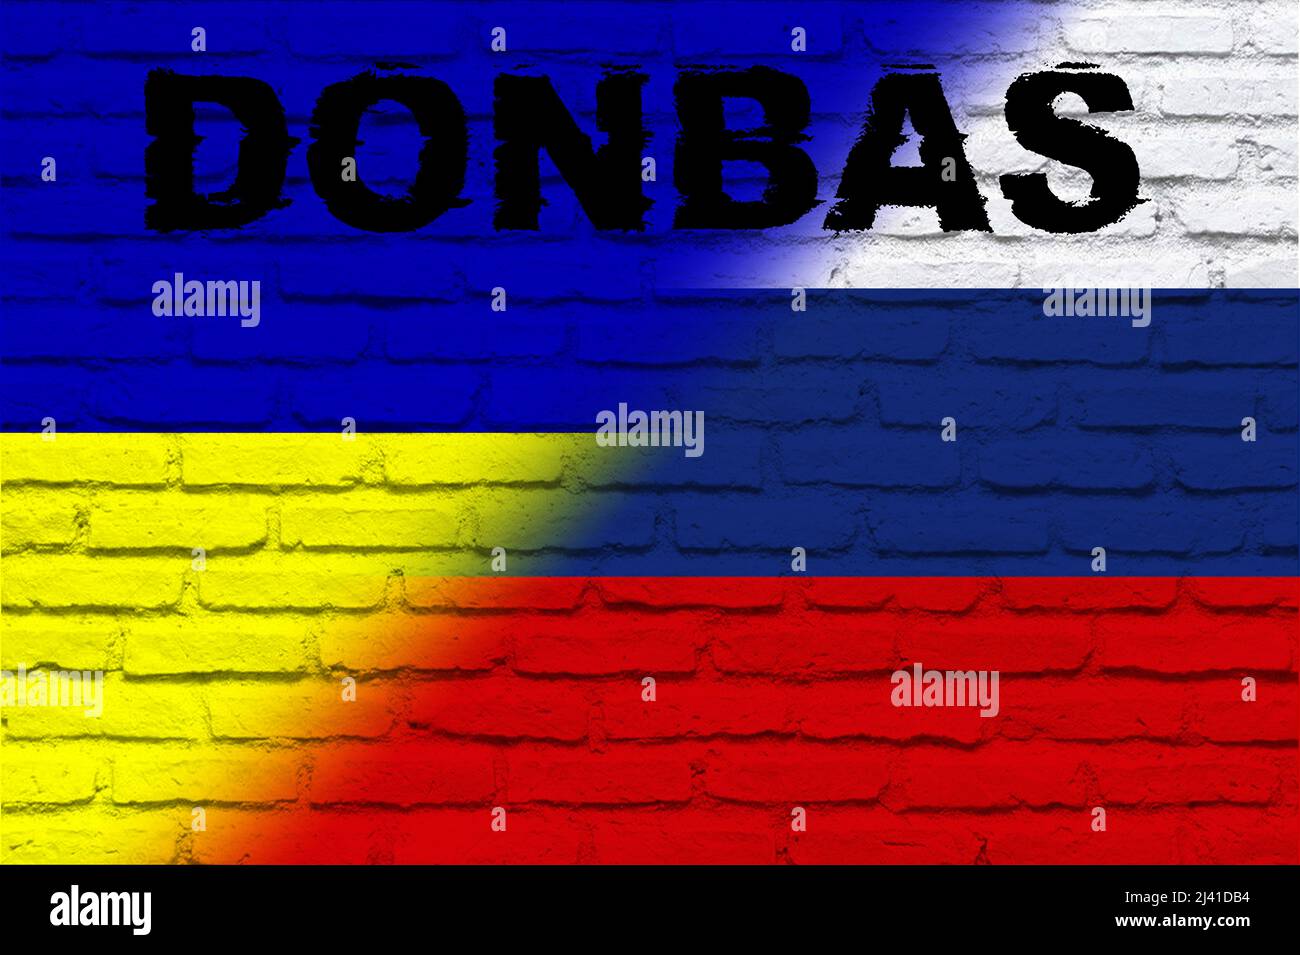 Donbas. Conflitto tra Ucraina e Russia. Immagine della bandiera della Russia e della bandiera dell'Ucraina con la parola Donbas scritta su di essa. Immagine orizzontale Foto Stock